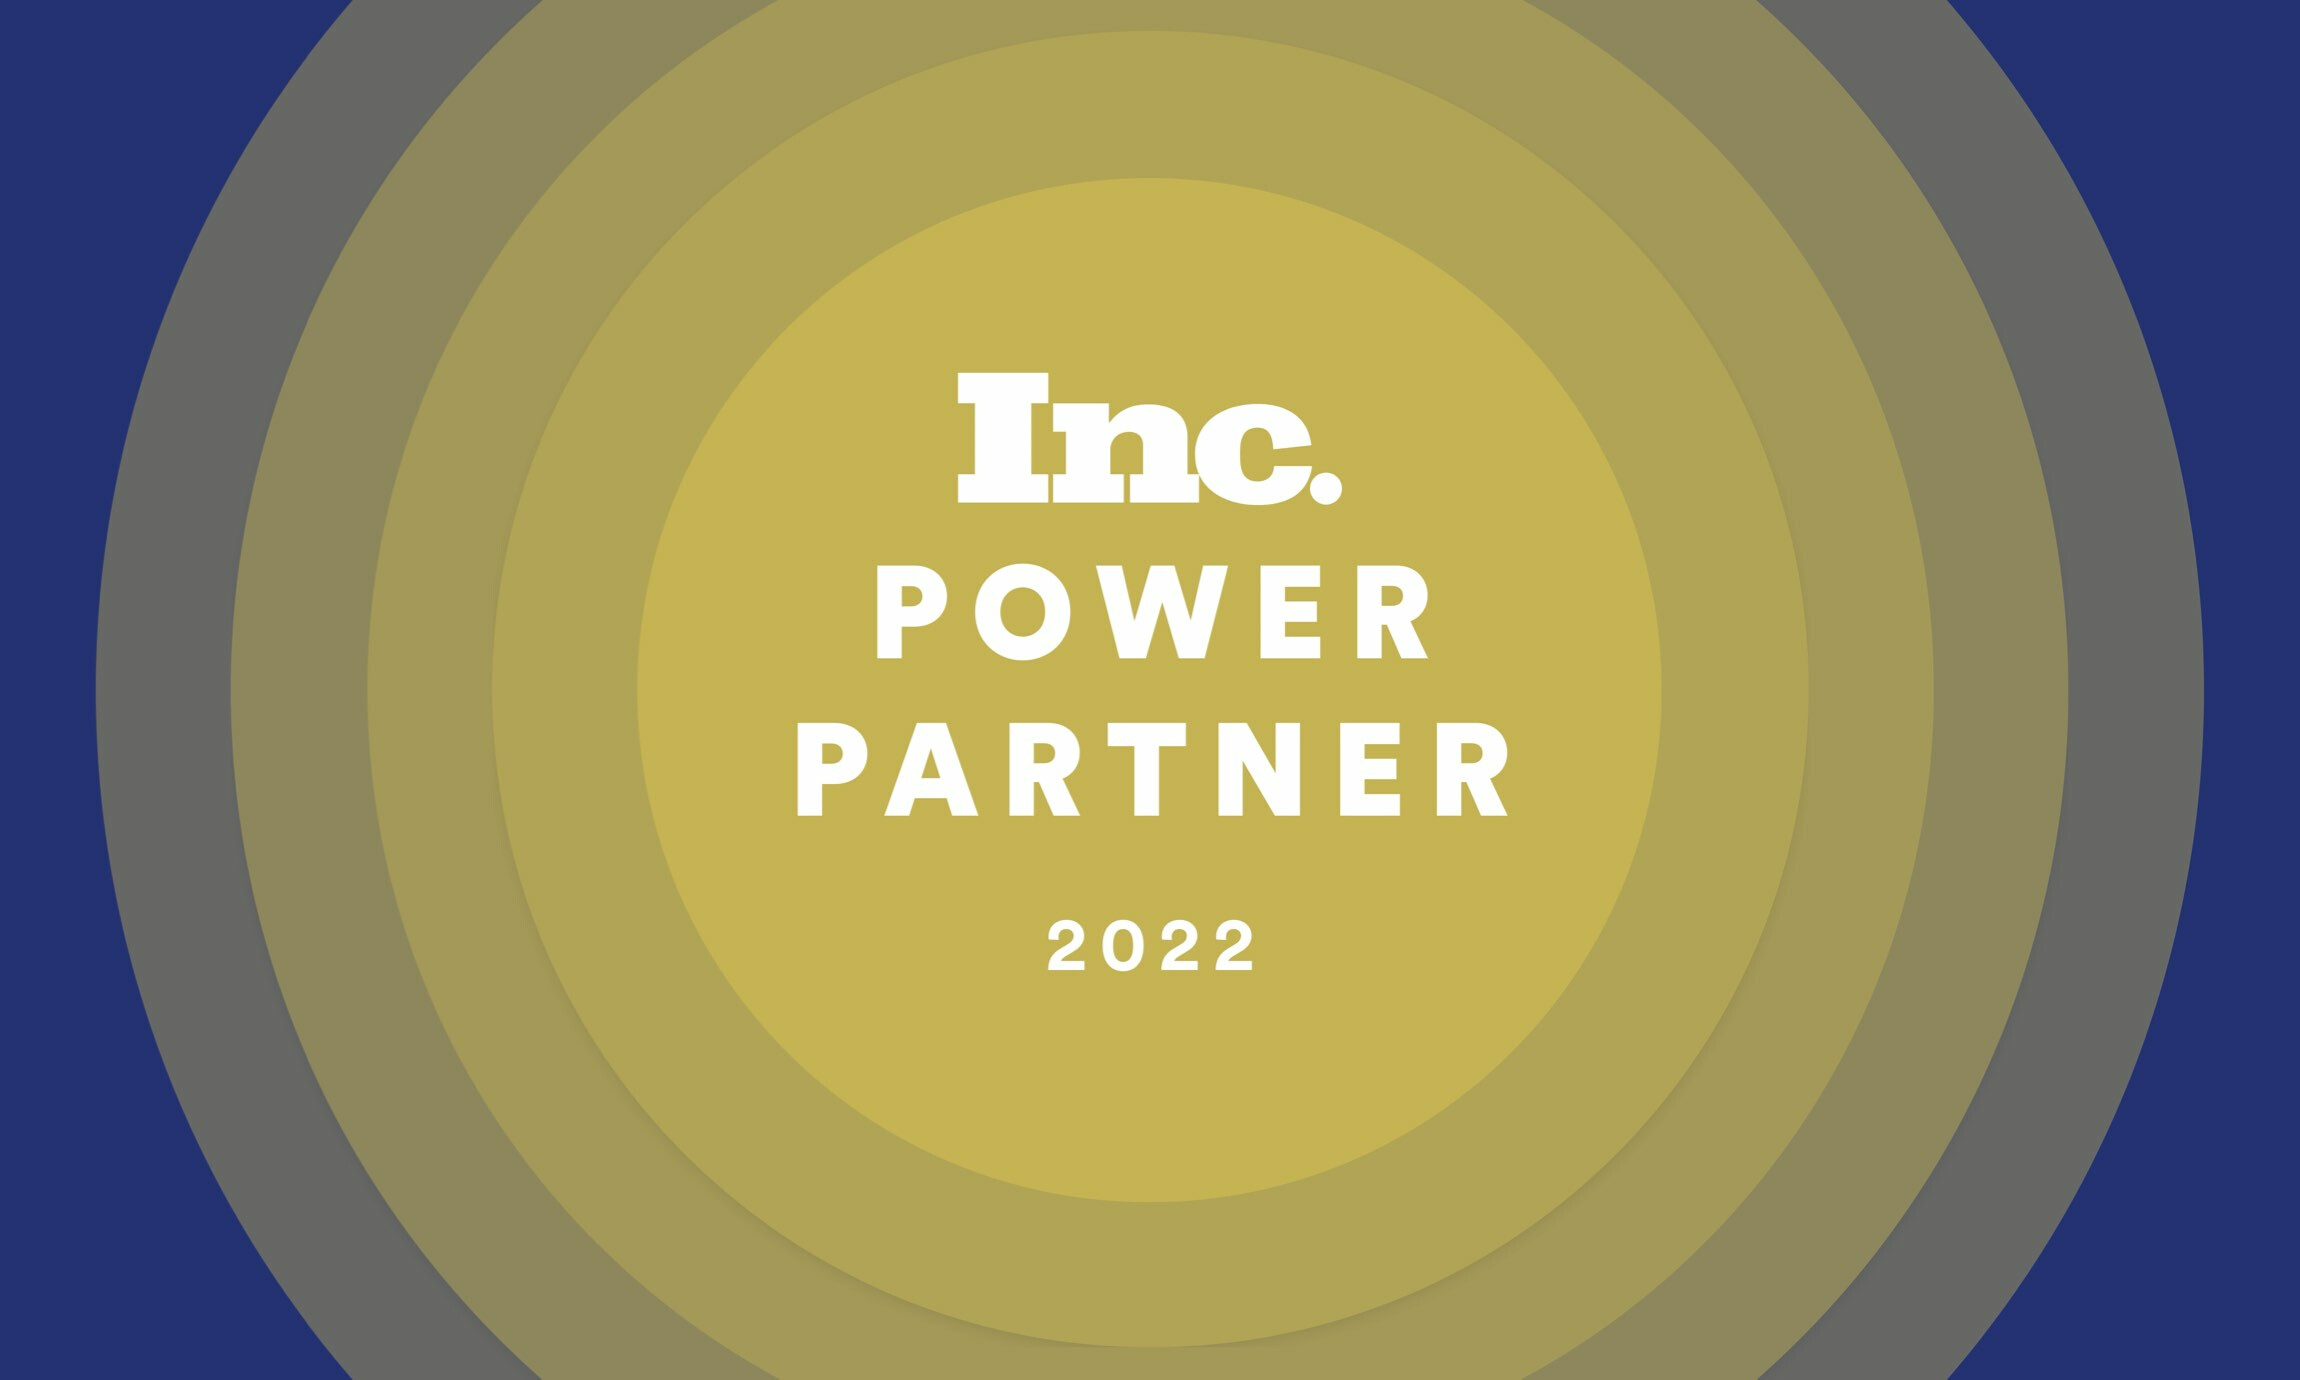 commercetools Named to Inc. Magazine’s 2022 Power Partner Awards